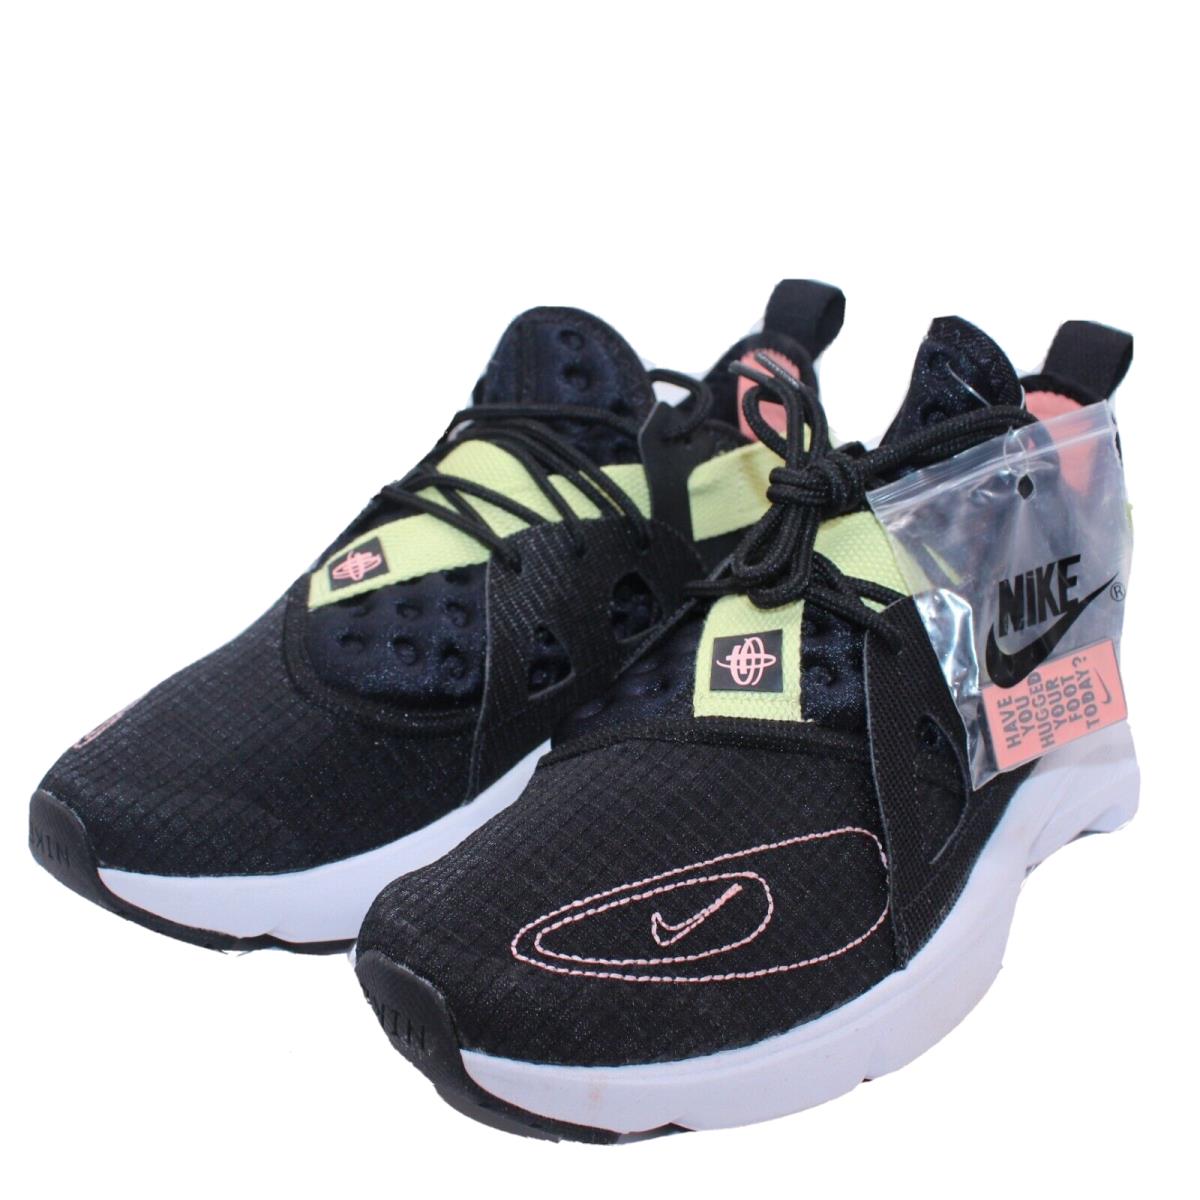 Nike Huarache Type N.354 Shoes Sneakers Running Training 9 Men 10.5 Women`s